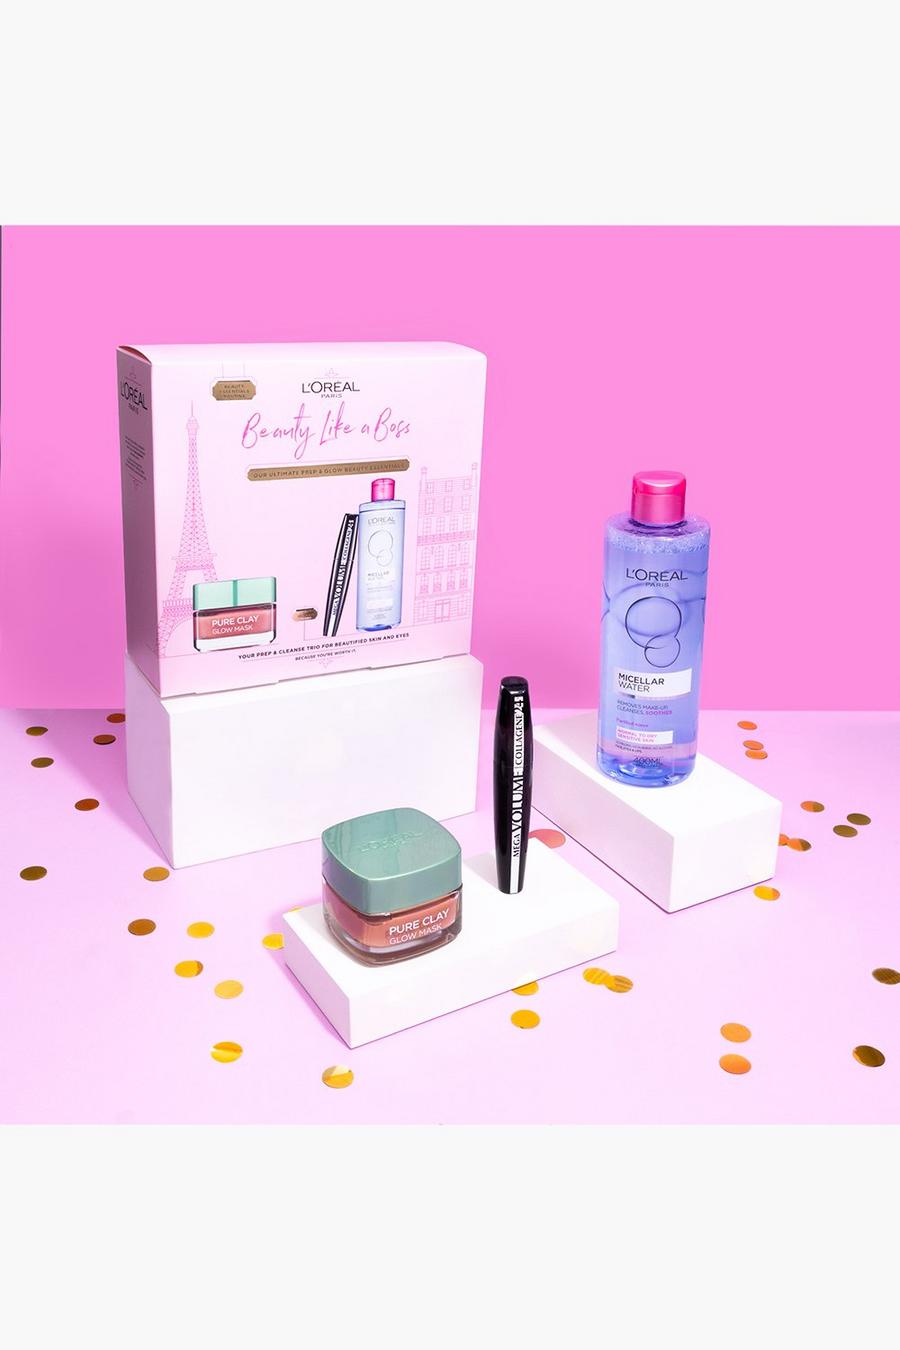 L'Oréal Paris - Coffret cadeau - Beaty Like A Boss, Pink image number 1